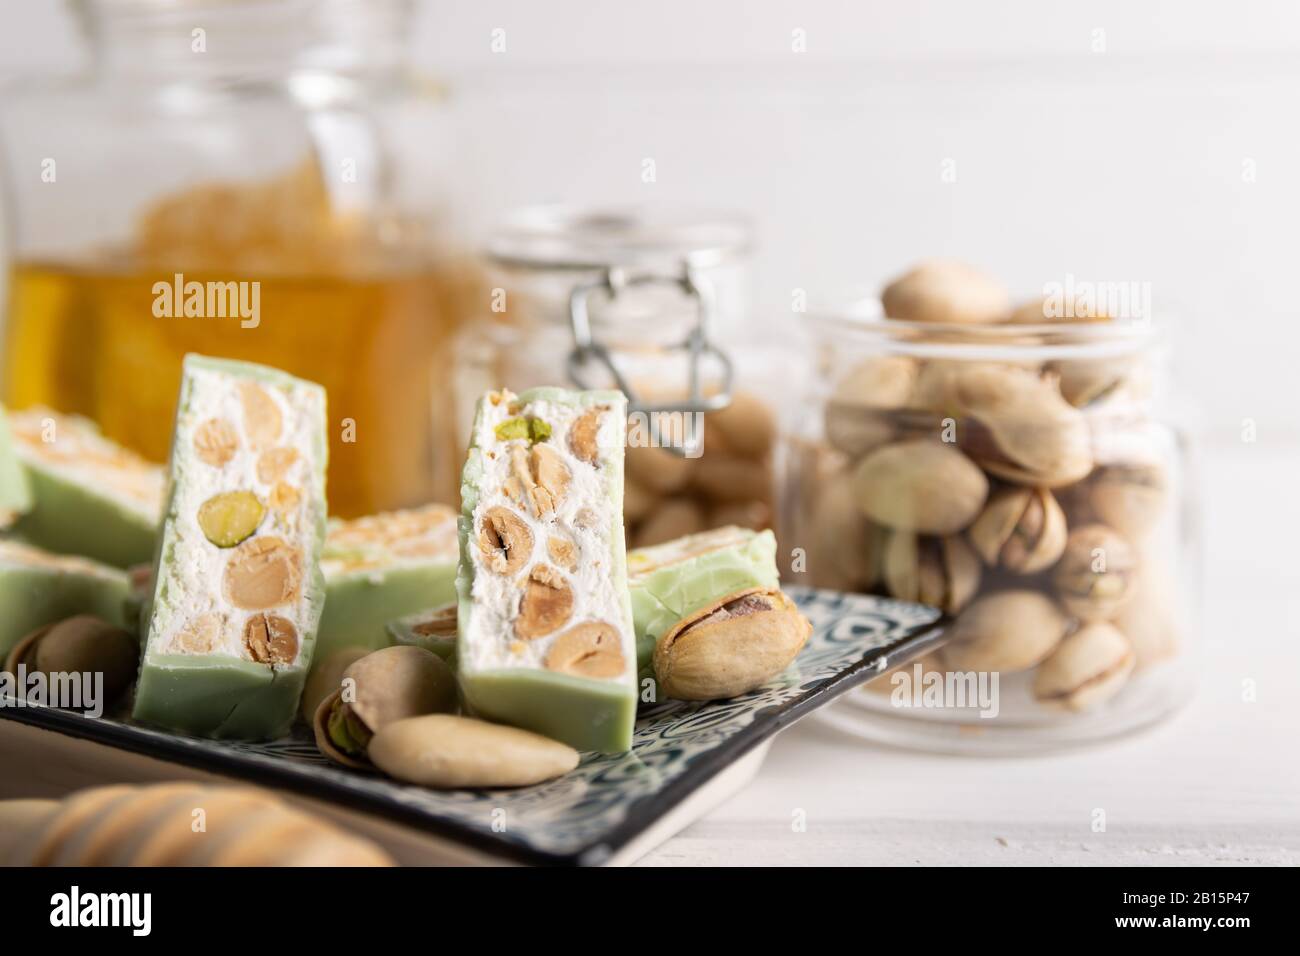 Nougat bio faites avec du miel, pistache, noisette, noix et amandes, sur un fond blanc. Banque D'Images